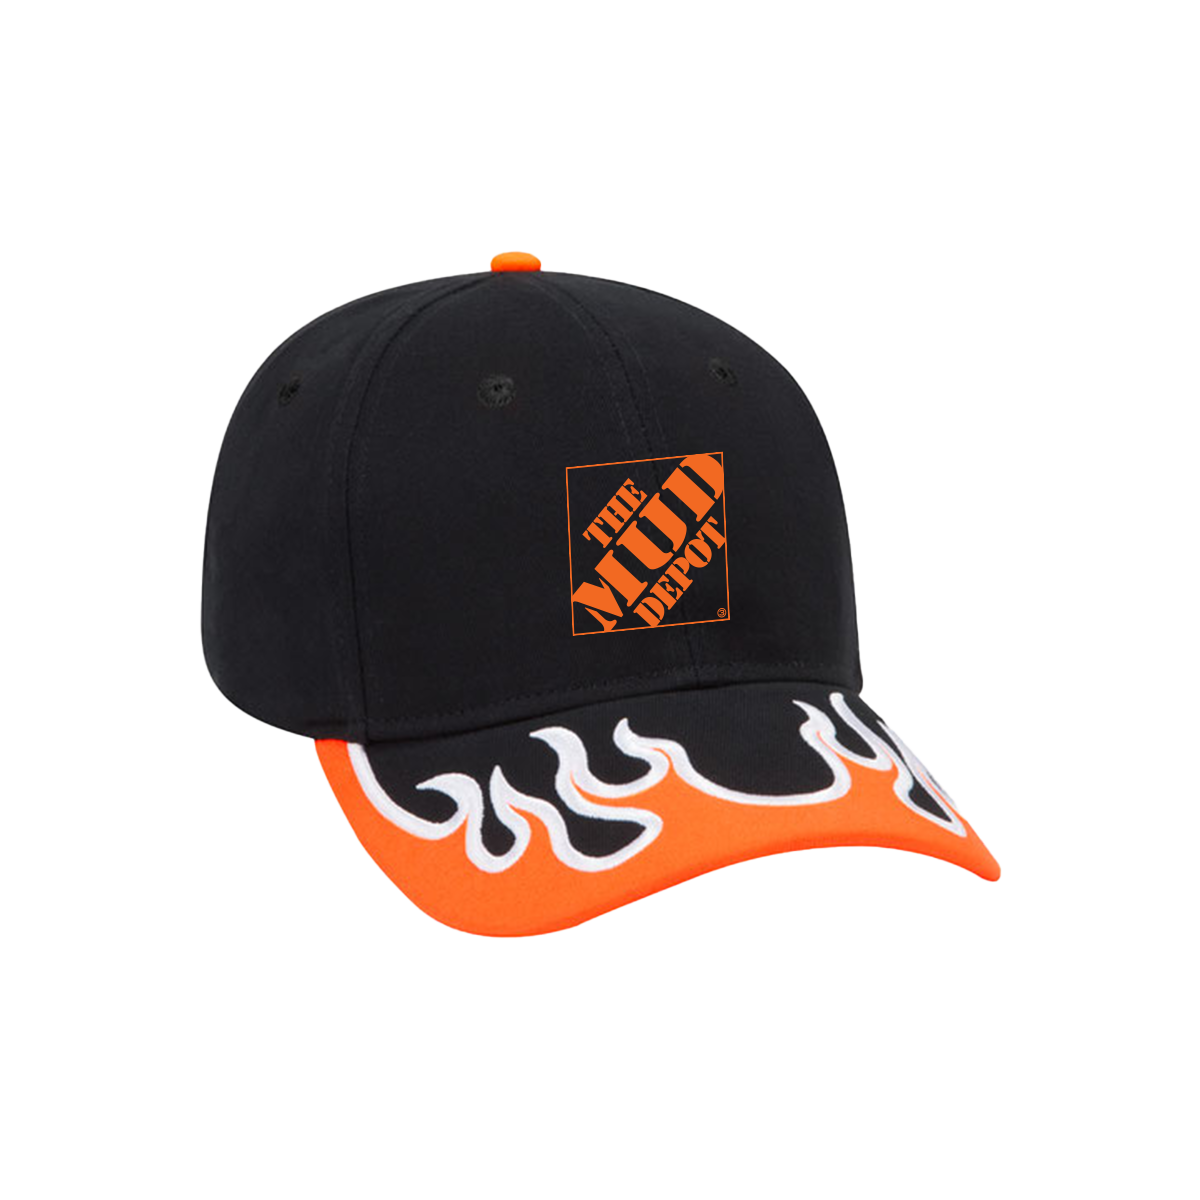 Mud Depot Flame Hat - Black/Orange